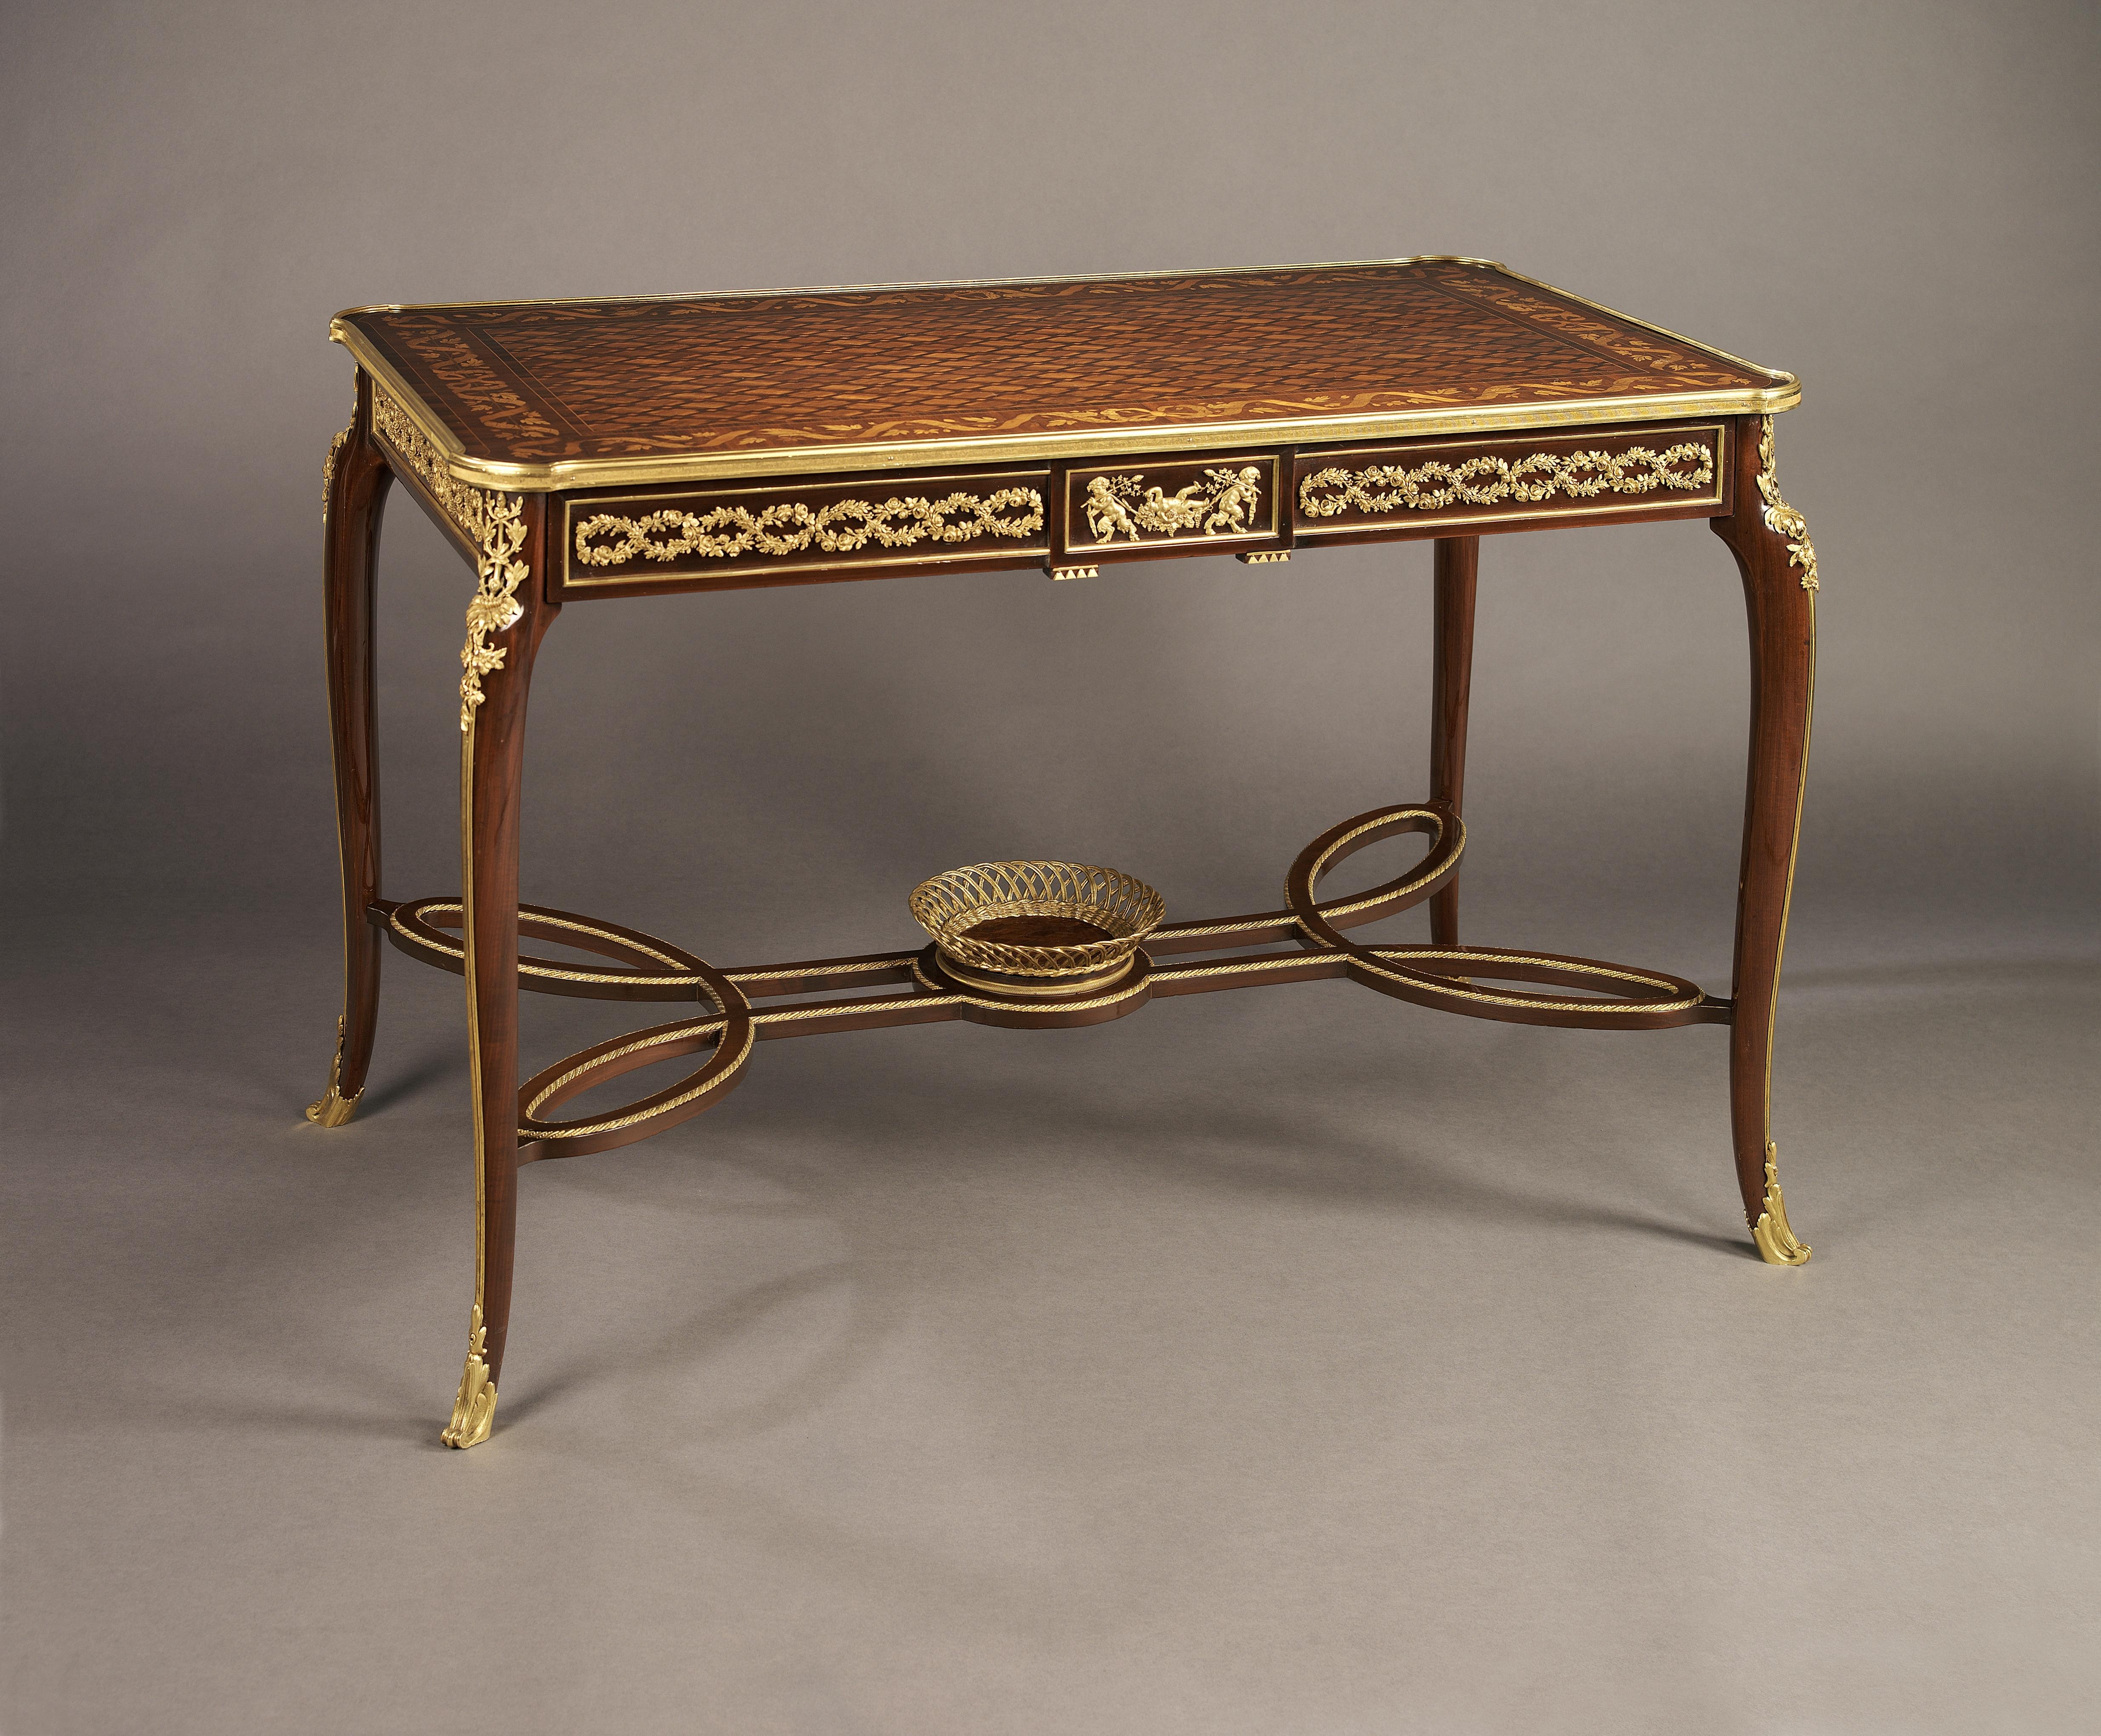 Ein feiner Mahagoni- und Intarsien-Mitteltisch im Louis XVI-Stil mit vergoldeten Bronzebeschlägen, der François Linke zugeschrieben wird.

Frankreich, um 1890.

Dieser feine Intarsientisch hat einen Fries mit einem vergoldeten bronzenen Mäander,